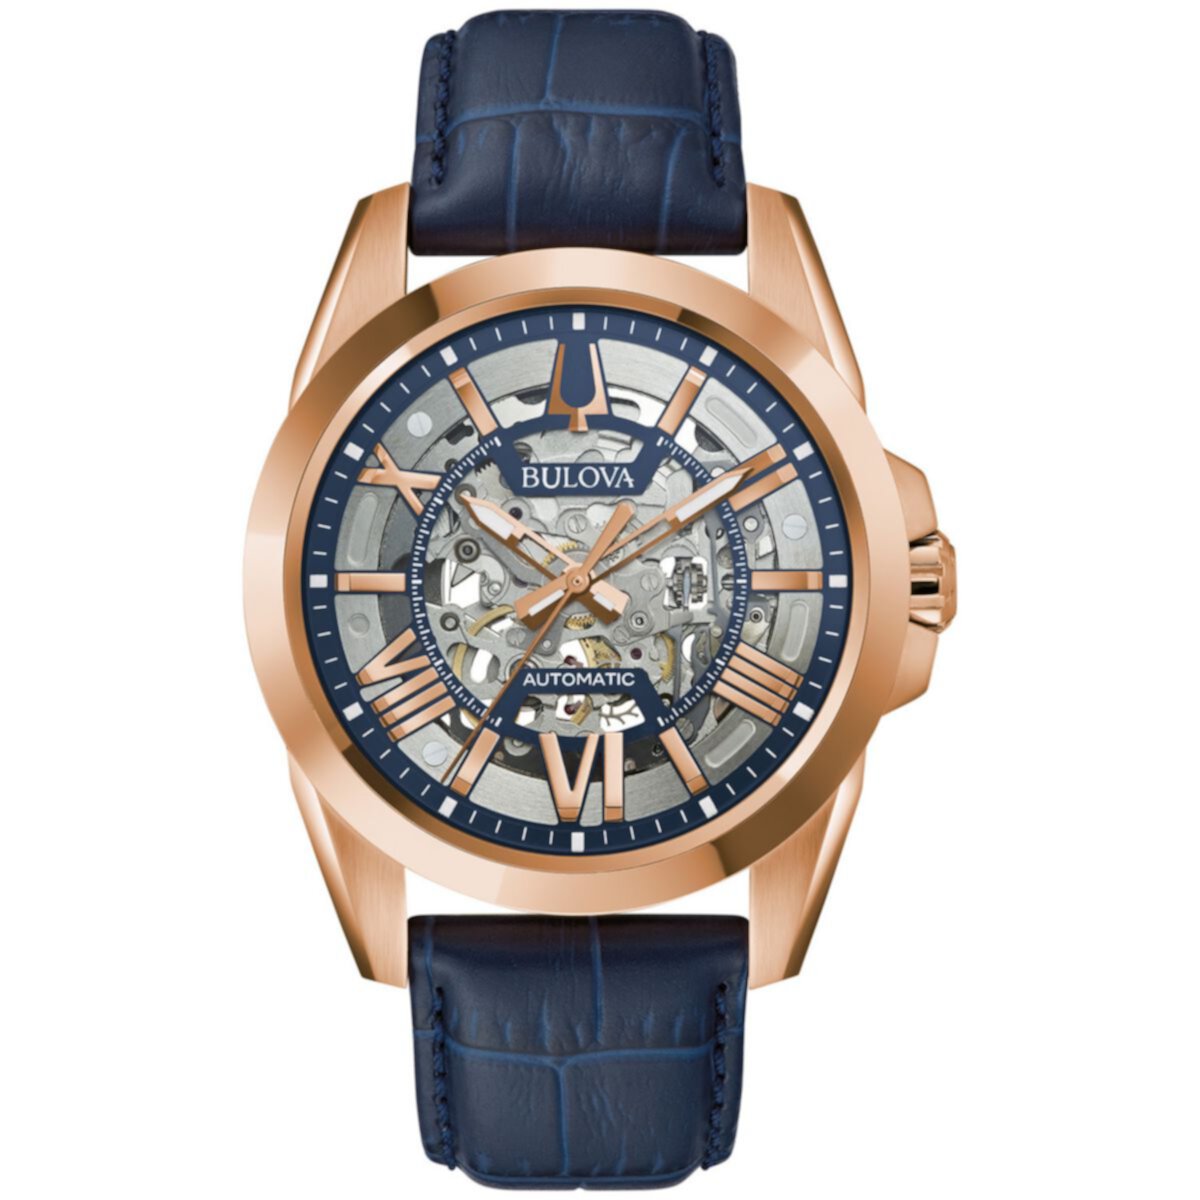 Мужские часы Bulova с синим кожаным ремешком и автоматическими часами со скелетом - 97A161 Bulova